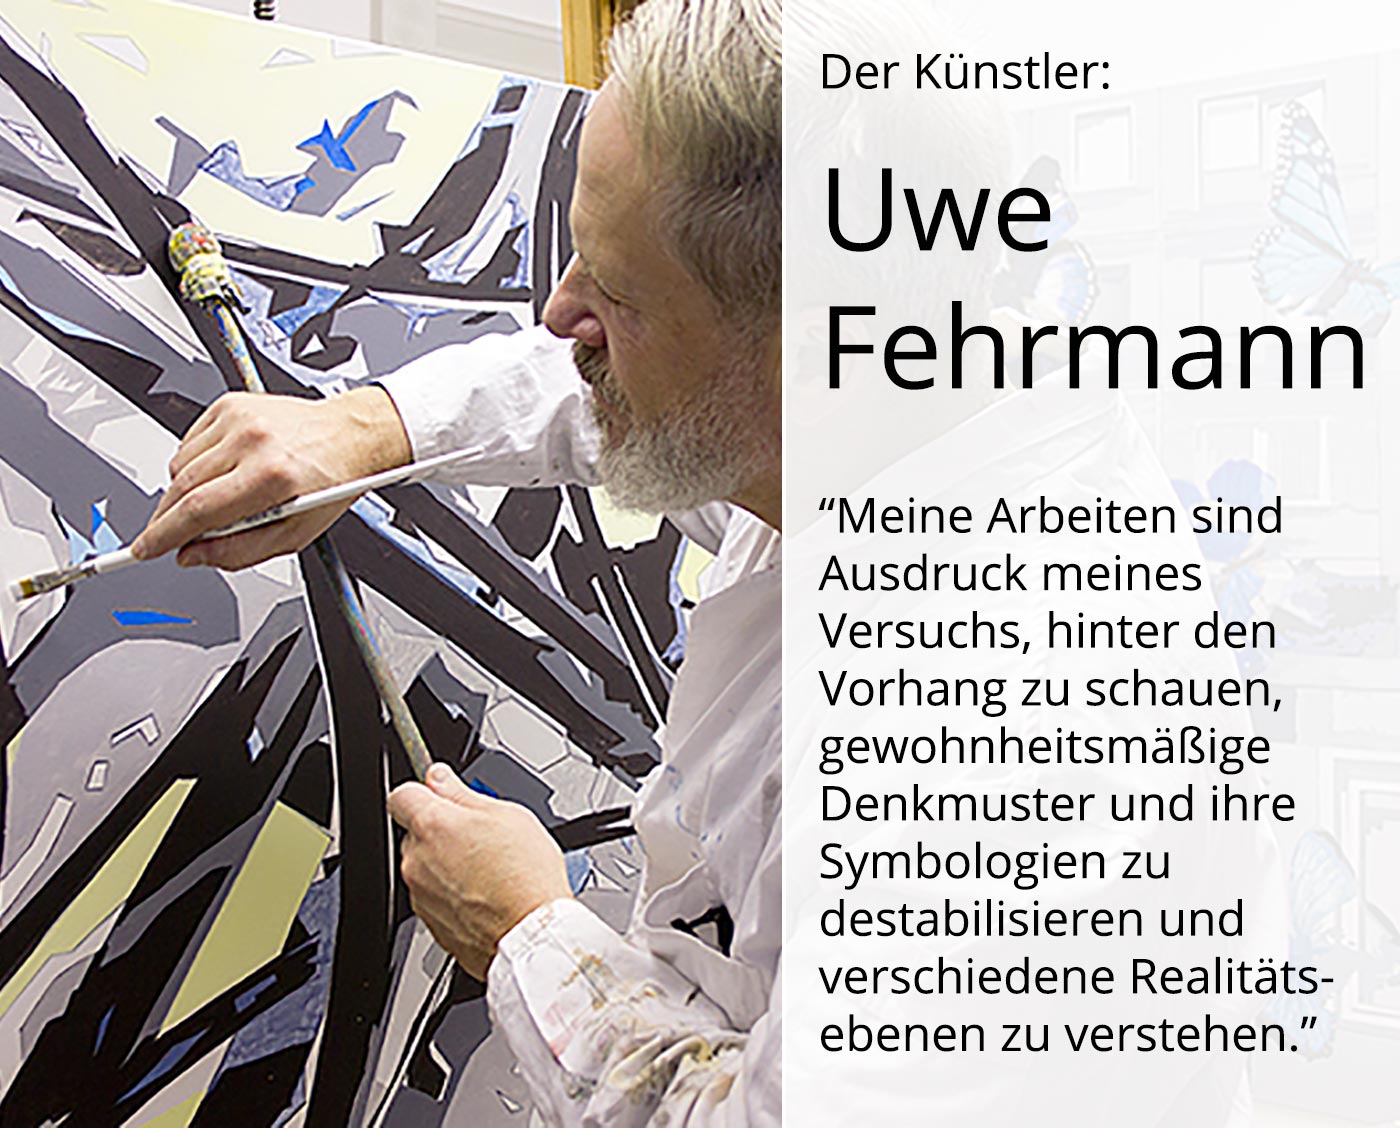 Edition, signierter Kunstdruck auf Leinwand, Uwe Fehrmann: "Rosa Hase (Delft)" (A)